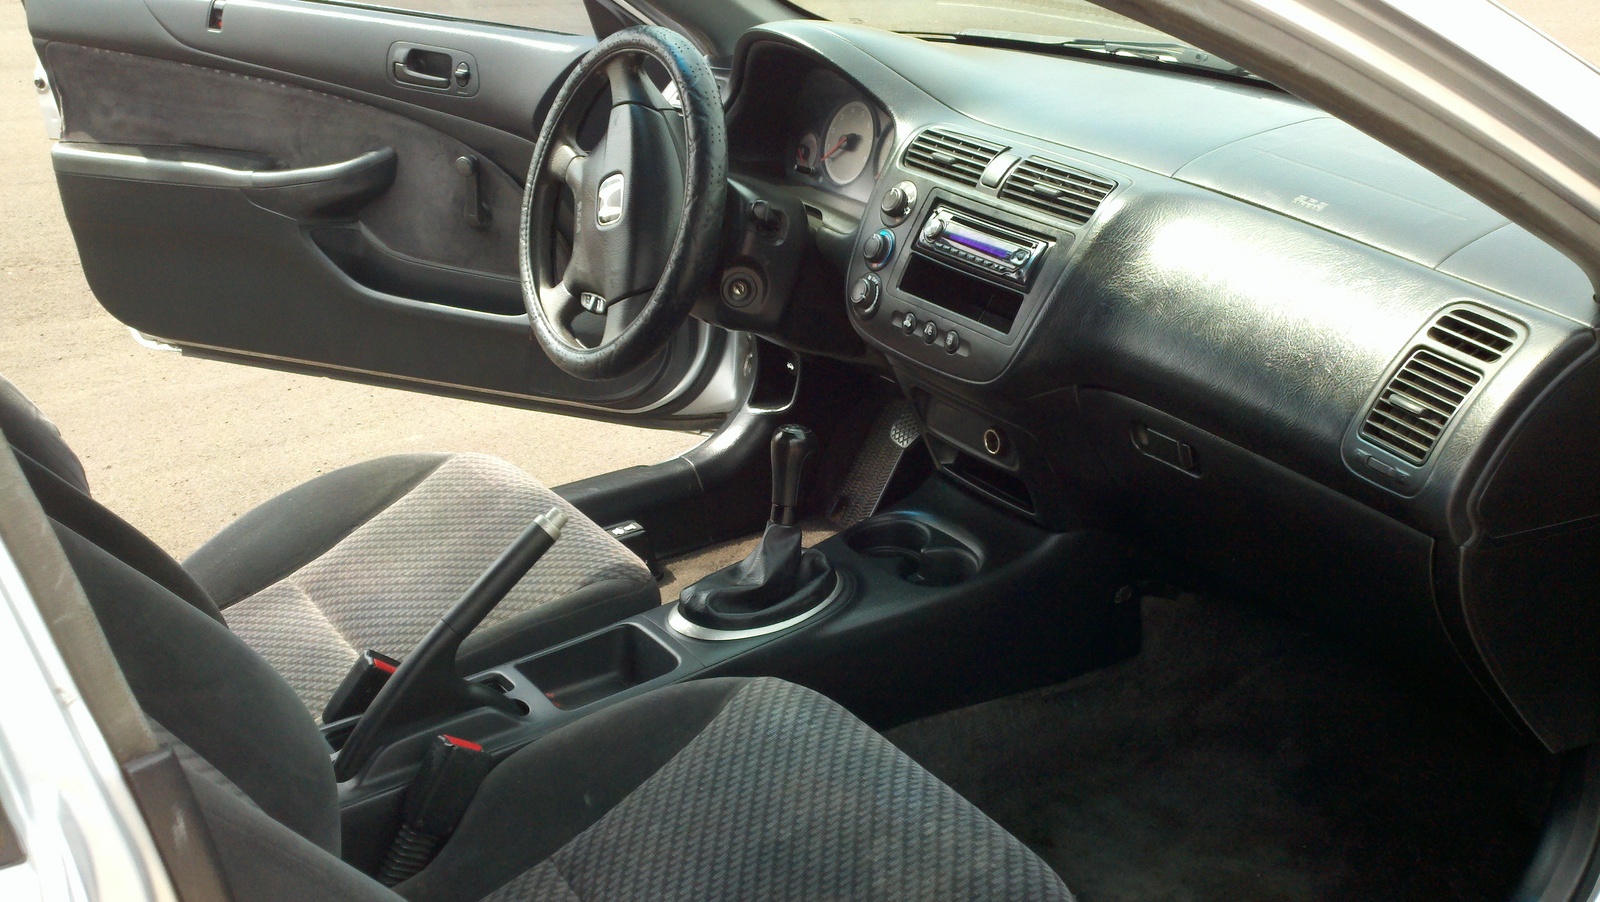 2001 Honda civic coupe ex interior #2